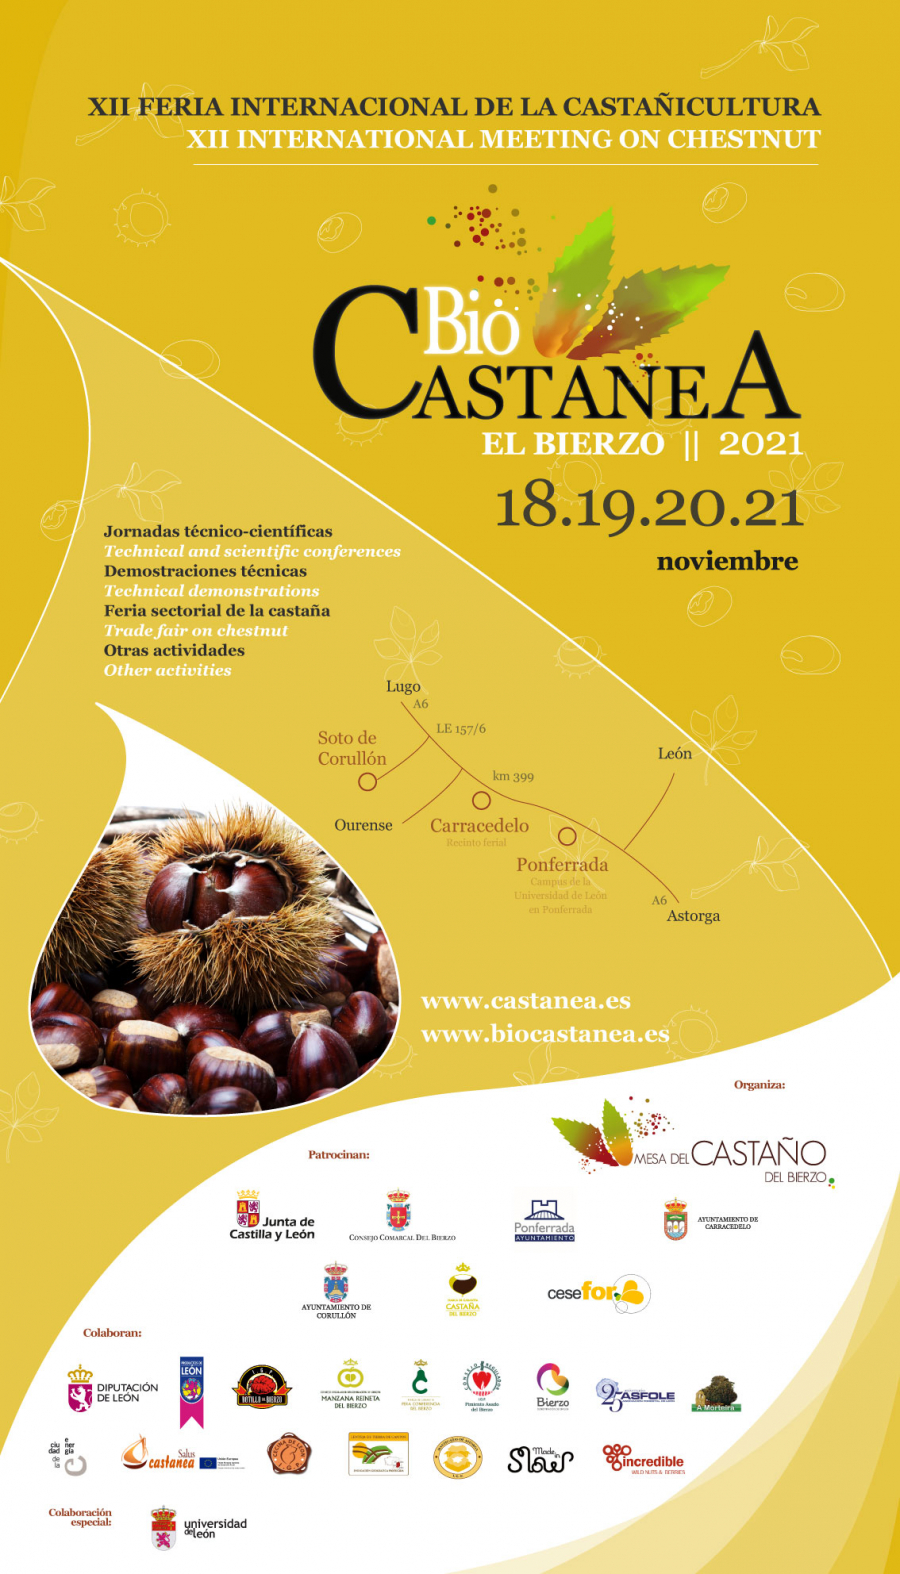  Jornadas técnicas Biocastanea. Feria Internacional de la Castañicultura. El Bierzo (León). 18 y 19 de noviembre de 2021